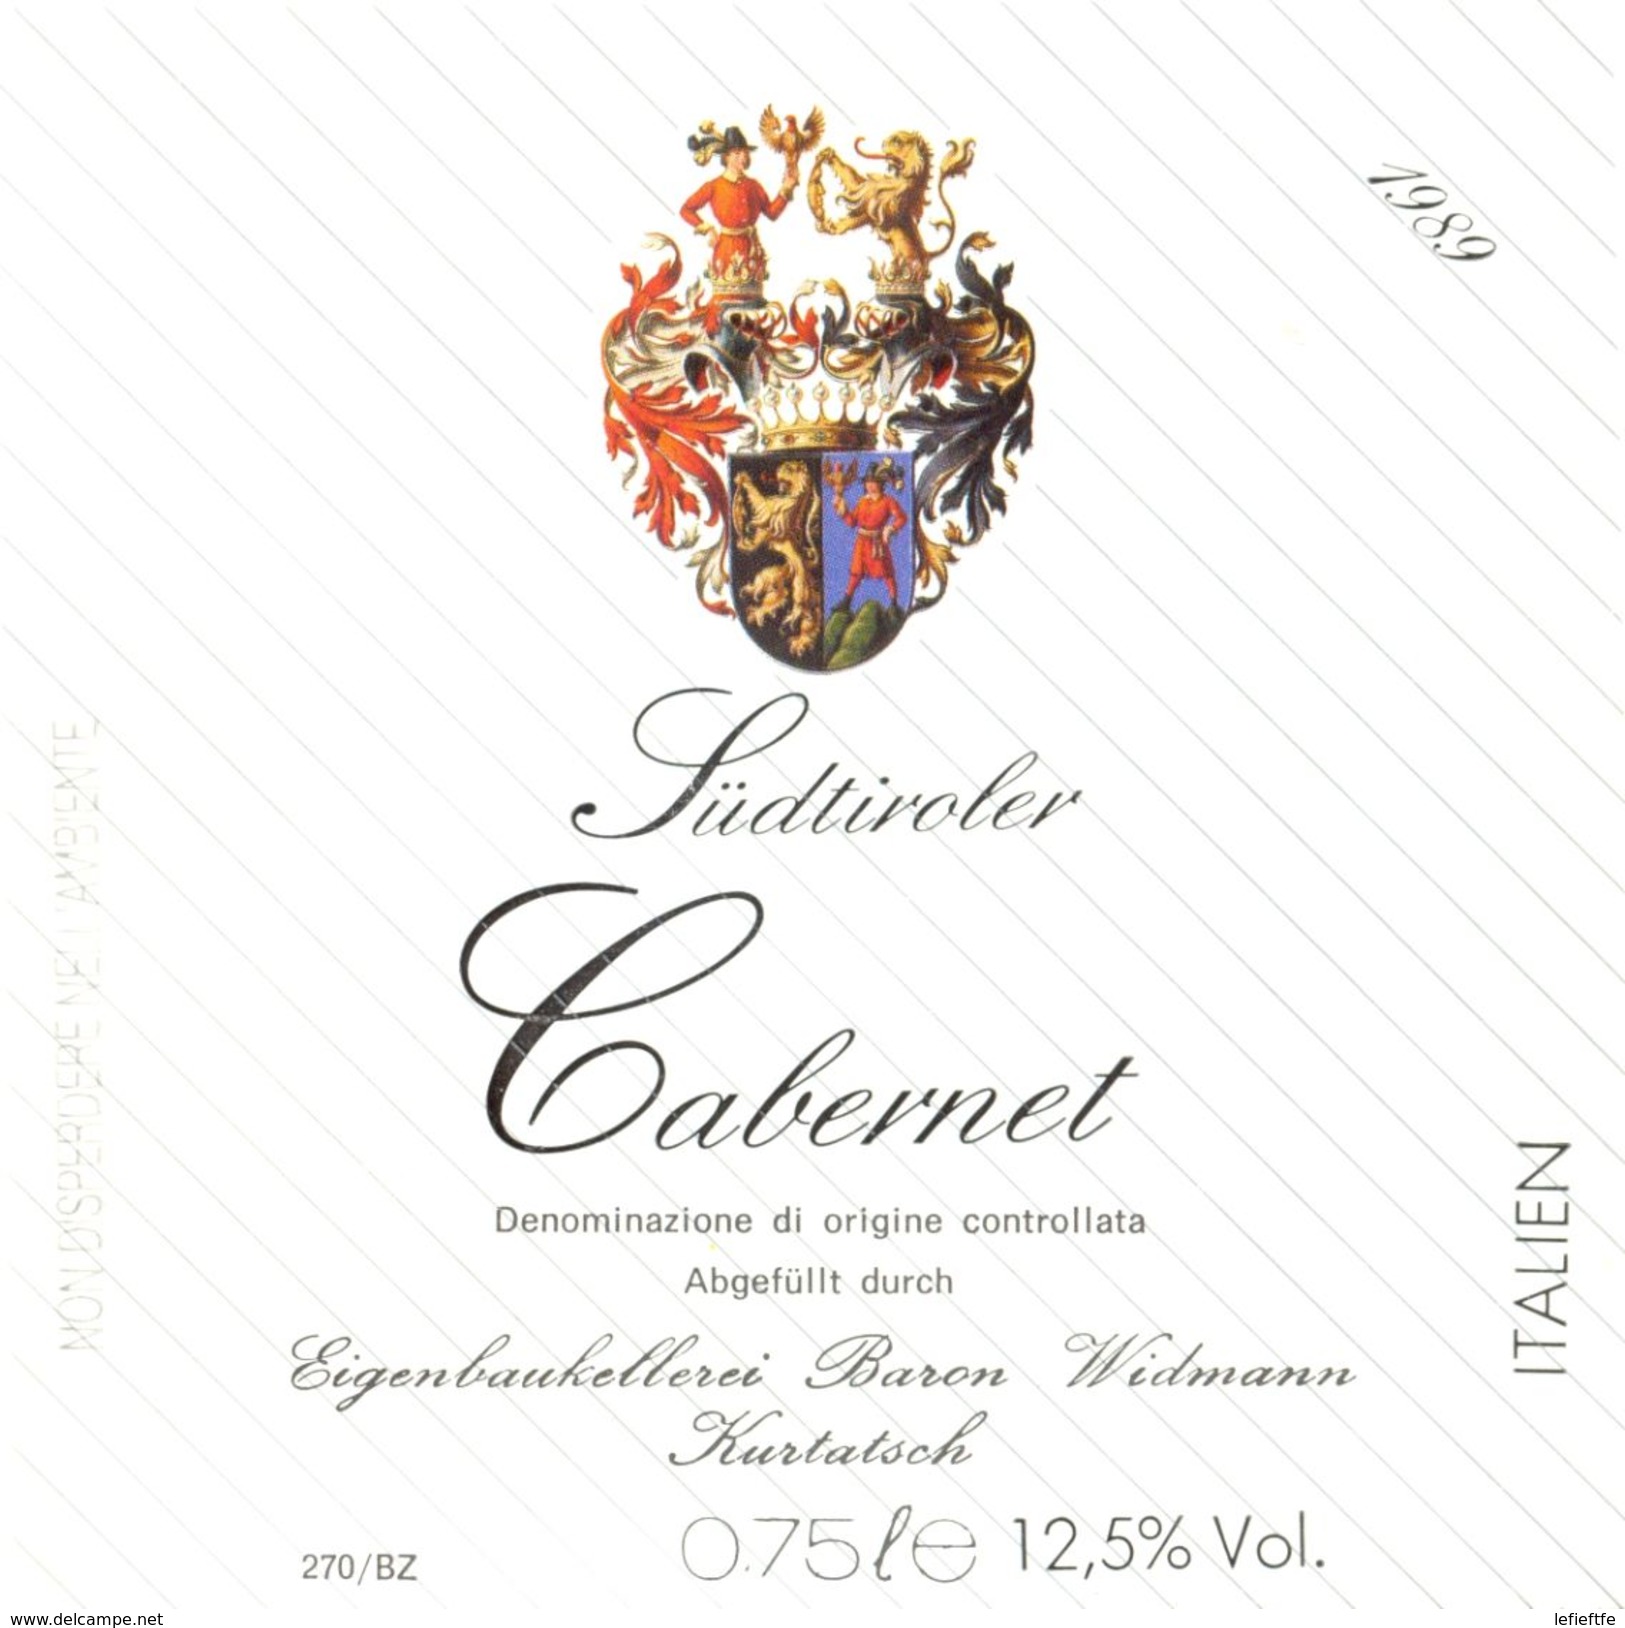 1419 - Italie - 1989 - Cabernet Südtiroler - Baron Widmann - Kurtatsch - Vino Tinto